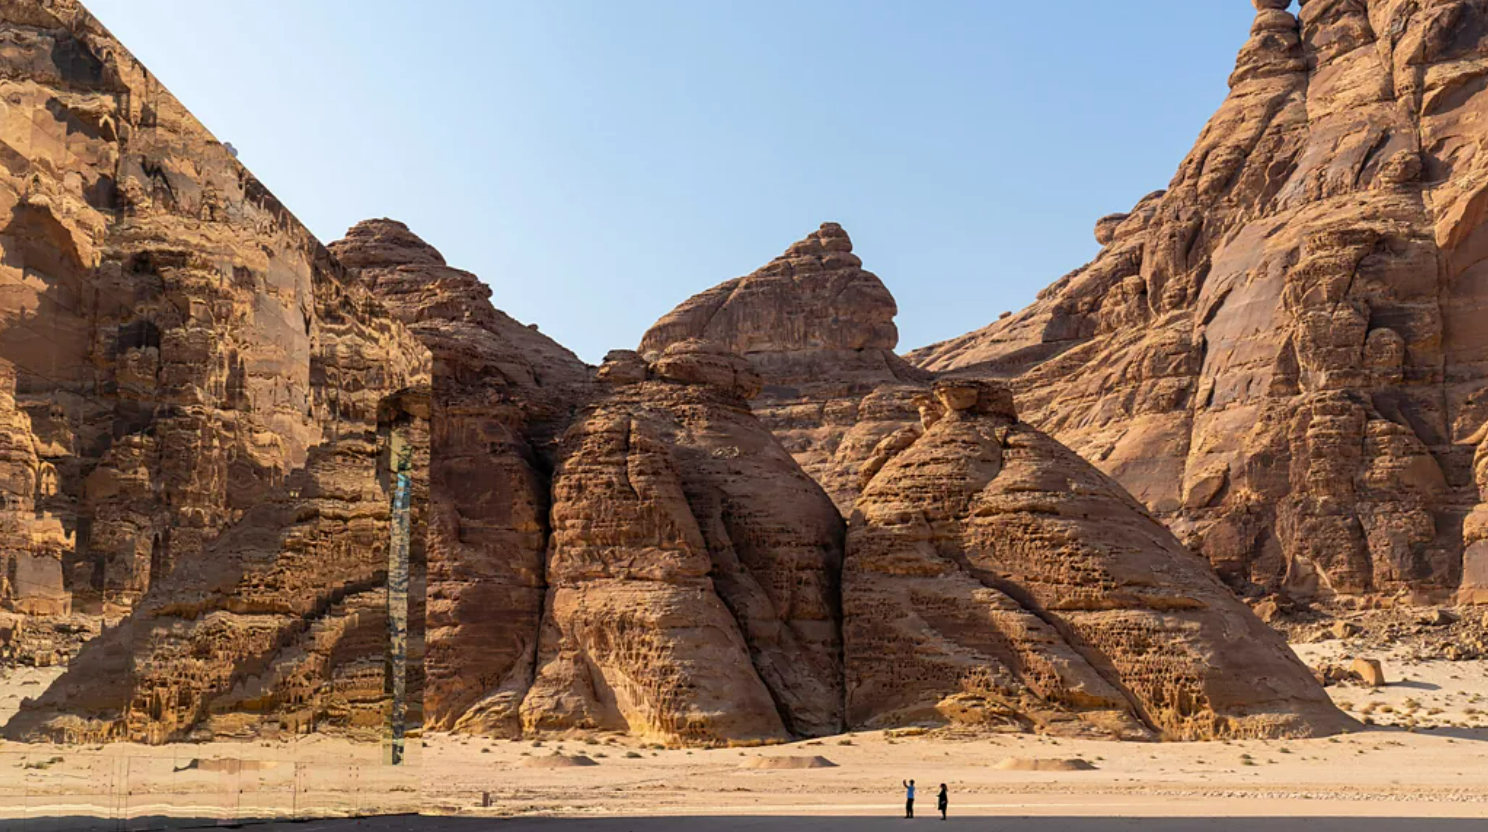 Construção espelhada no deserto, rodeada por pessoas e rochas